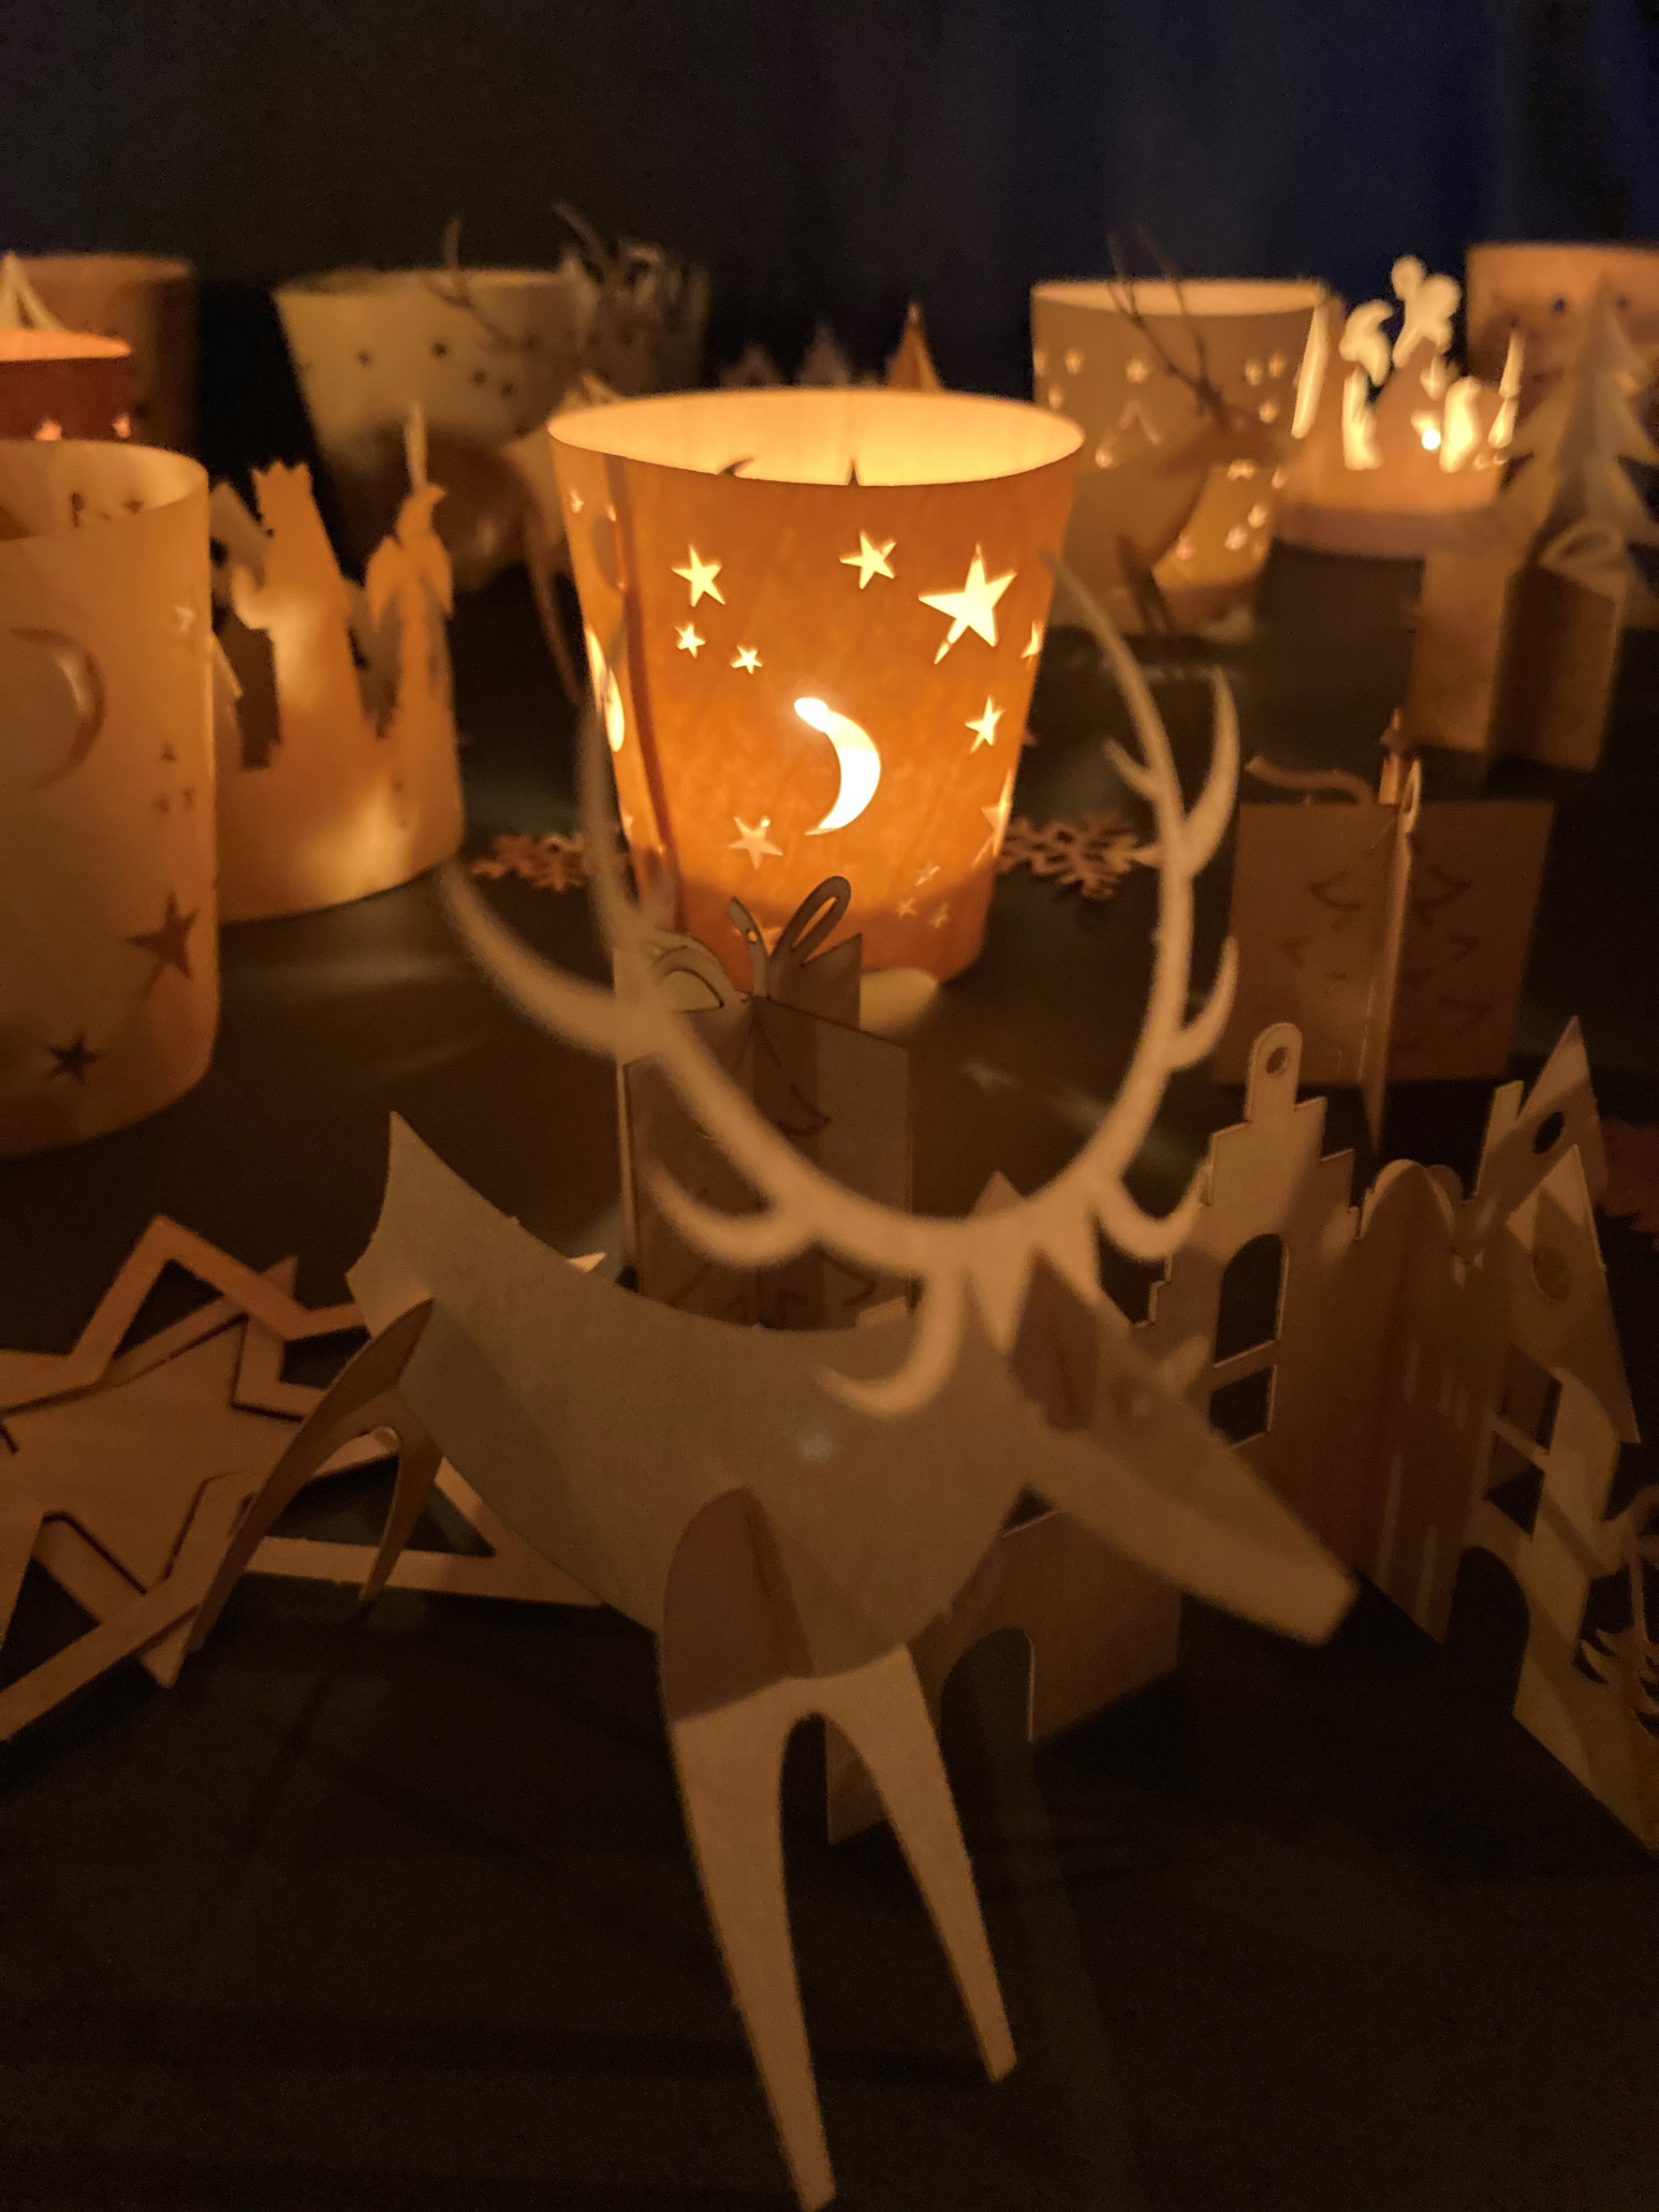 Bild 1: Lichtgrüße aus Ahorn-Furnier, umgeben von Tieren und Häusern aus dem „Filet des Baumes“. Foto: Carola Werner/Paperwood